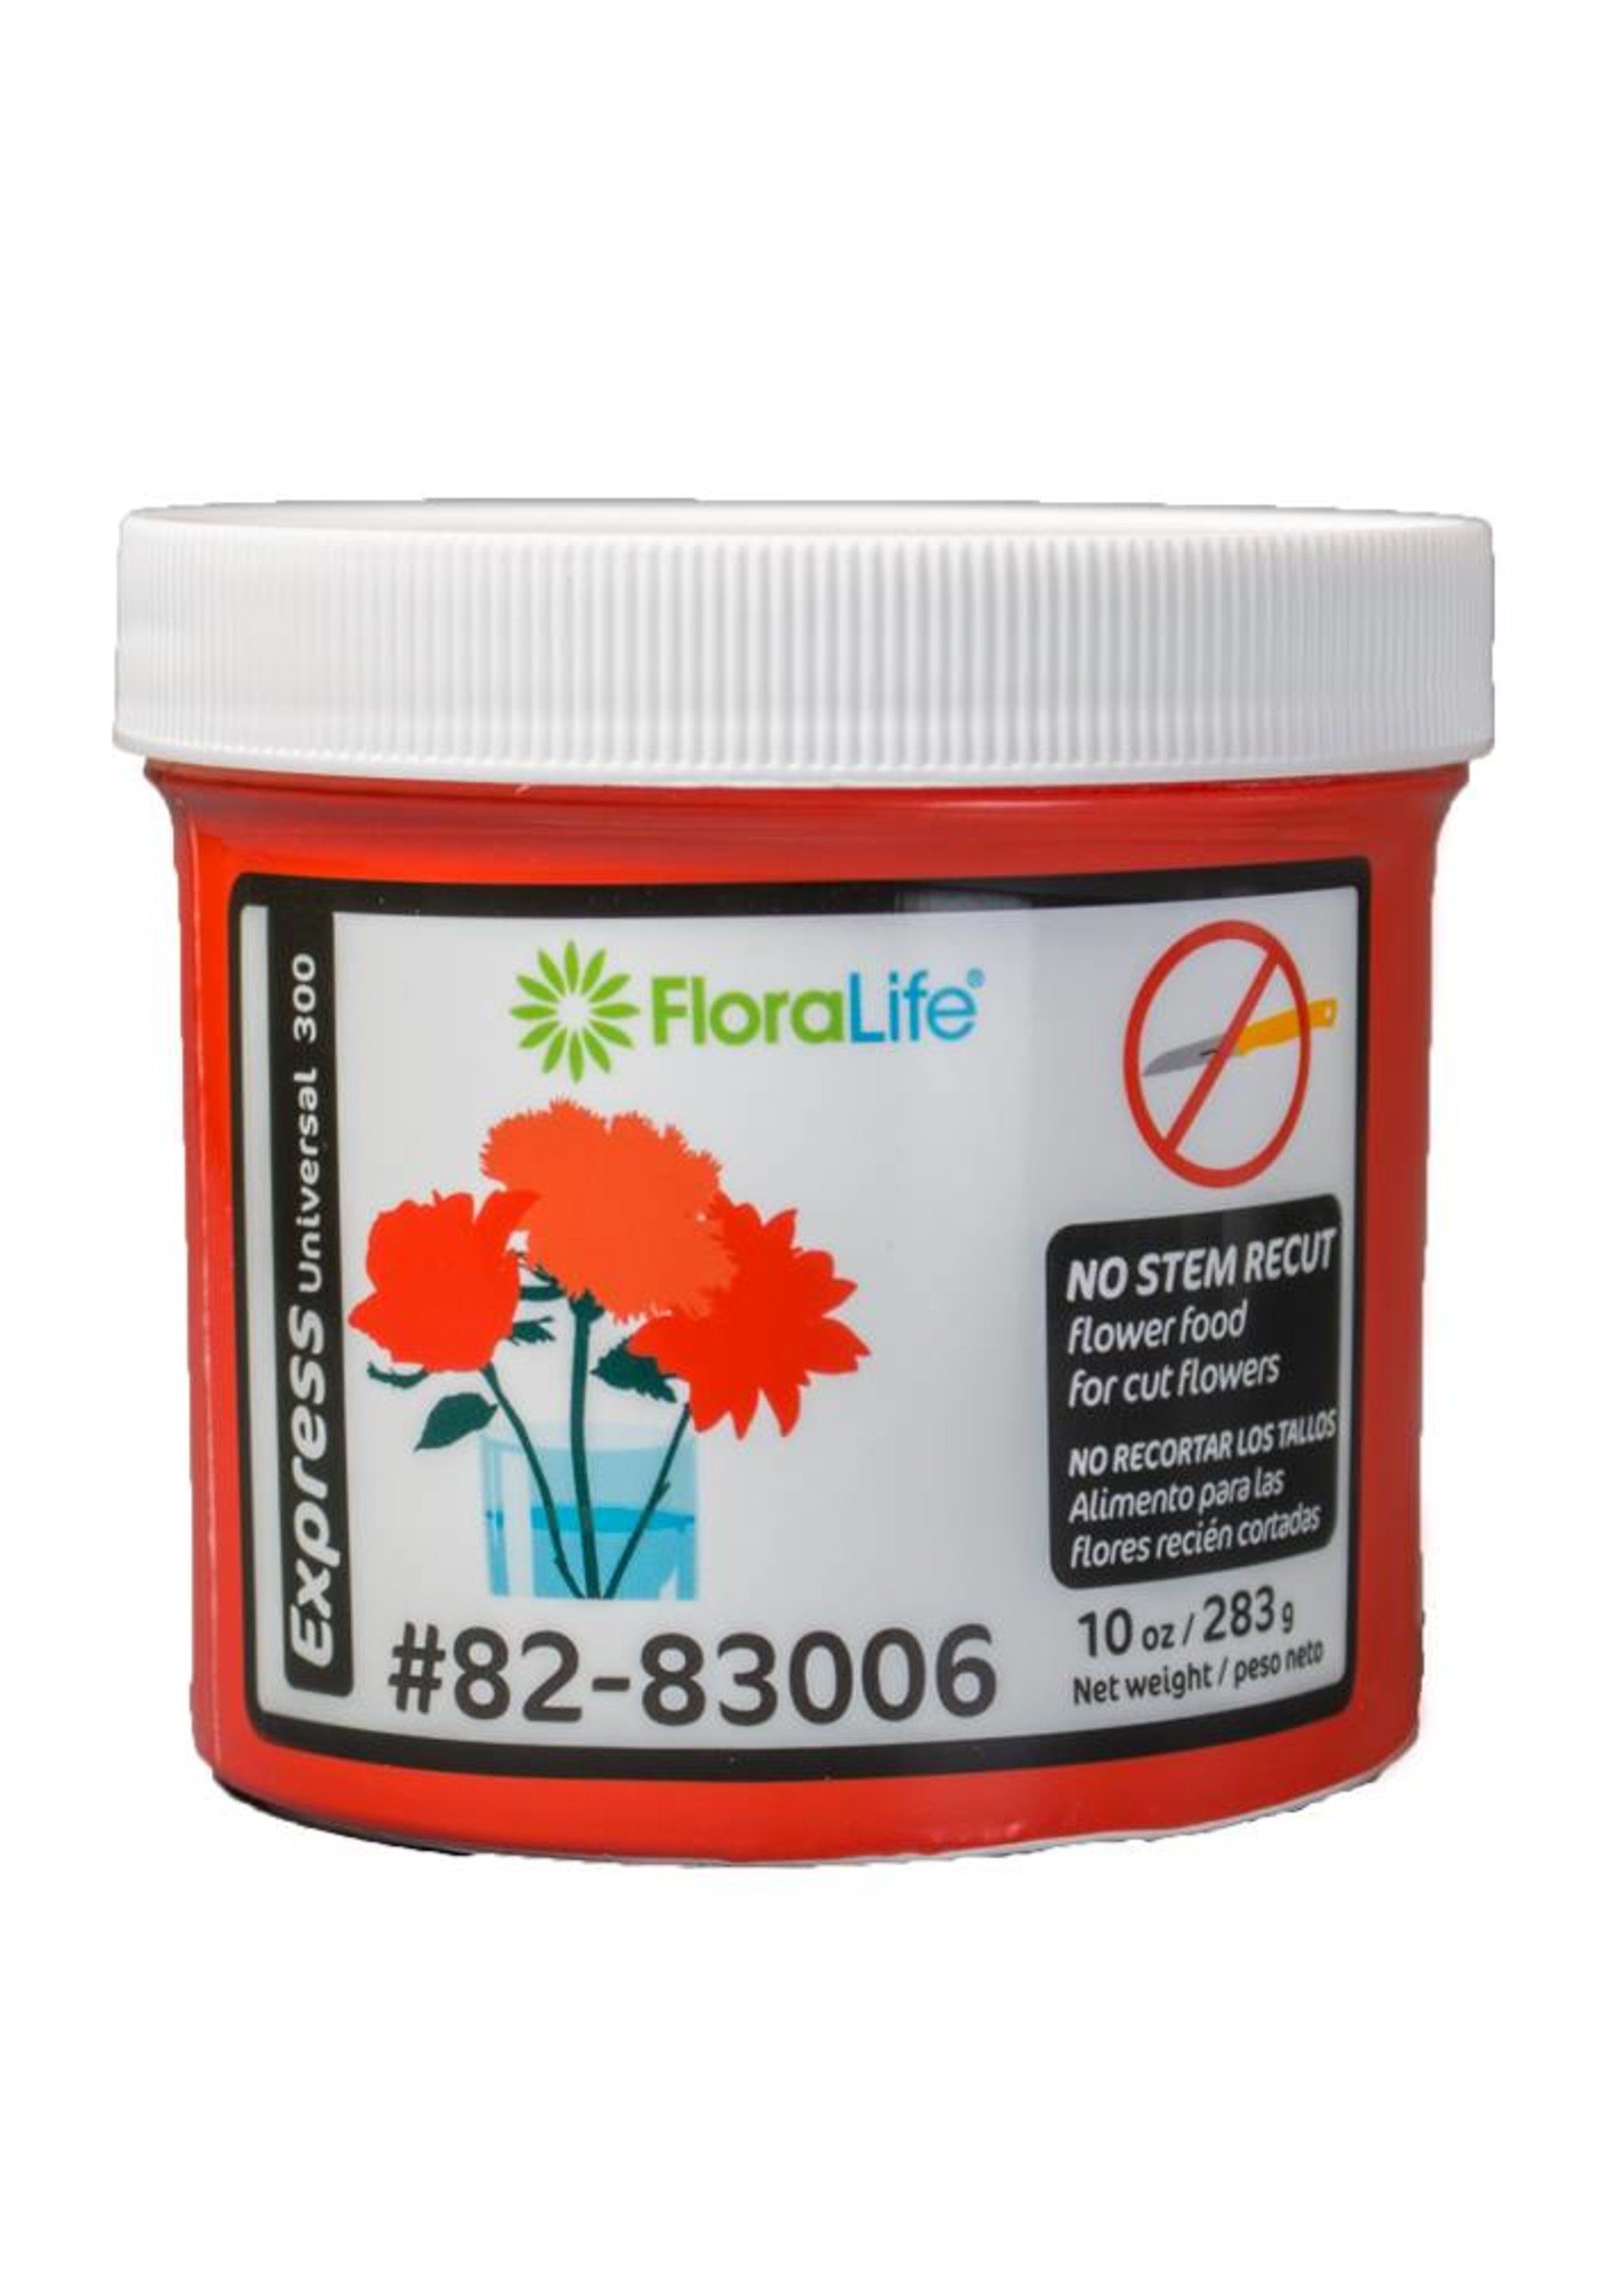 Floralife® Express Universal 300 powder